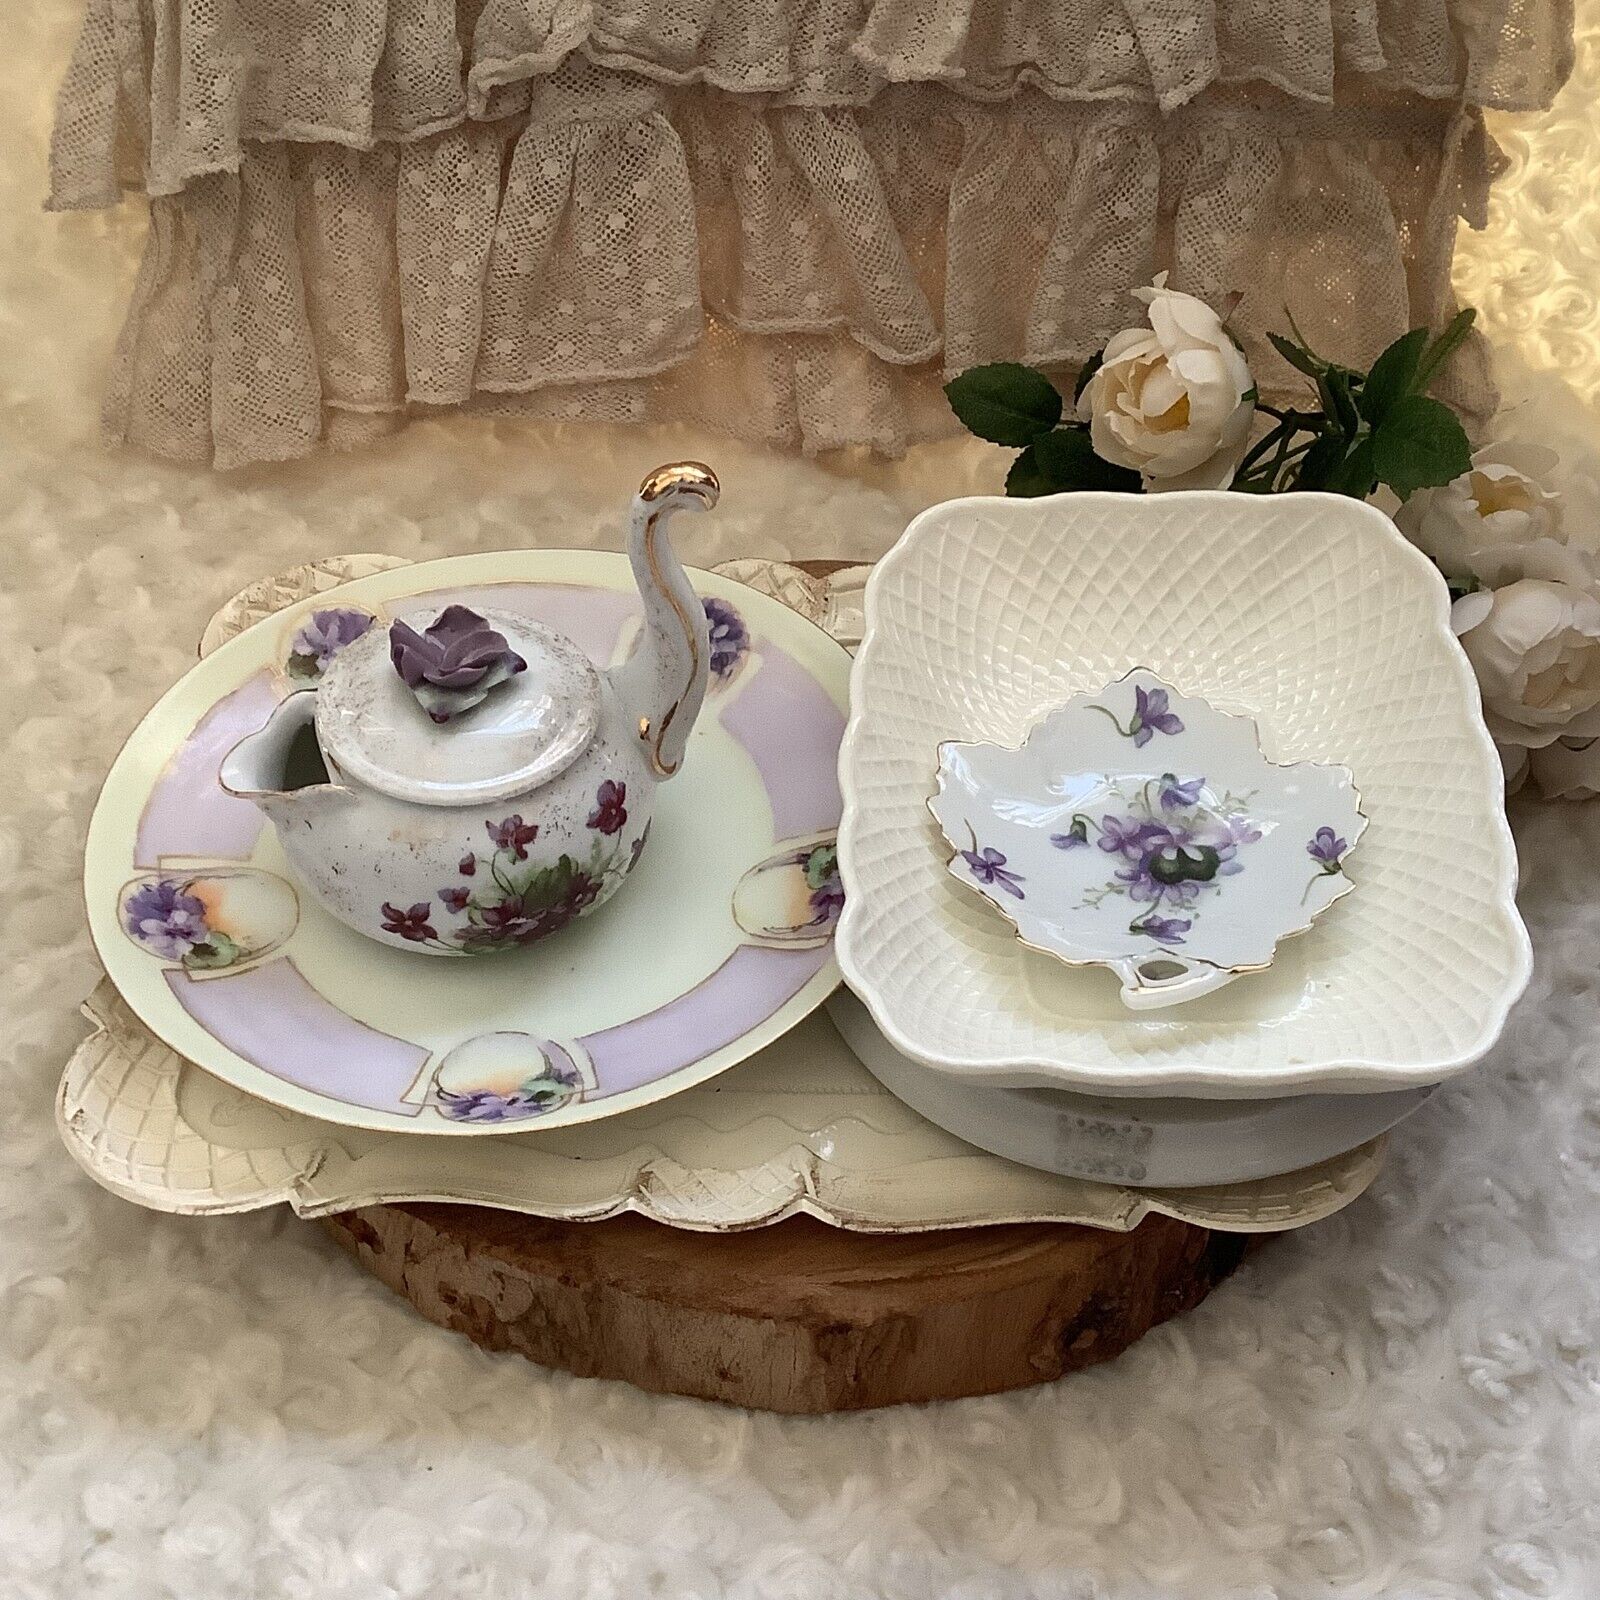 6 Vintage lavender pansies floral porcelain trinket dishes plates creamer trivet